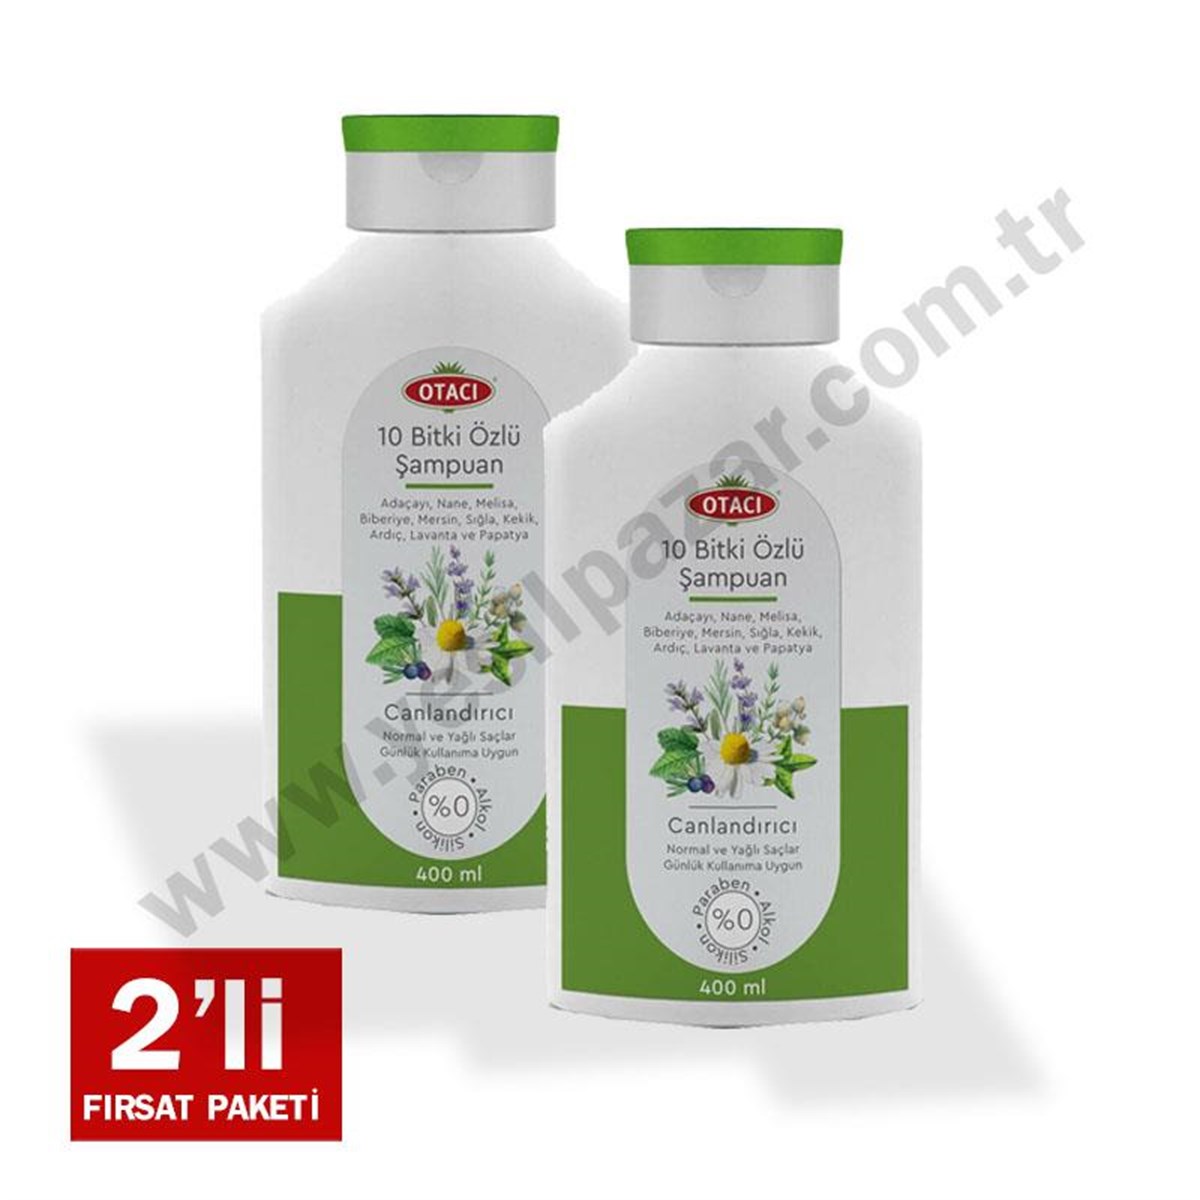 Yeşil Pazar I Piyasanın Fiyat Lideri !Otacı 10 Bitki Özlü Canlandırıcı  Şampuan 400 ml 2 li Avantaj Paketi51,00 TL